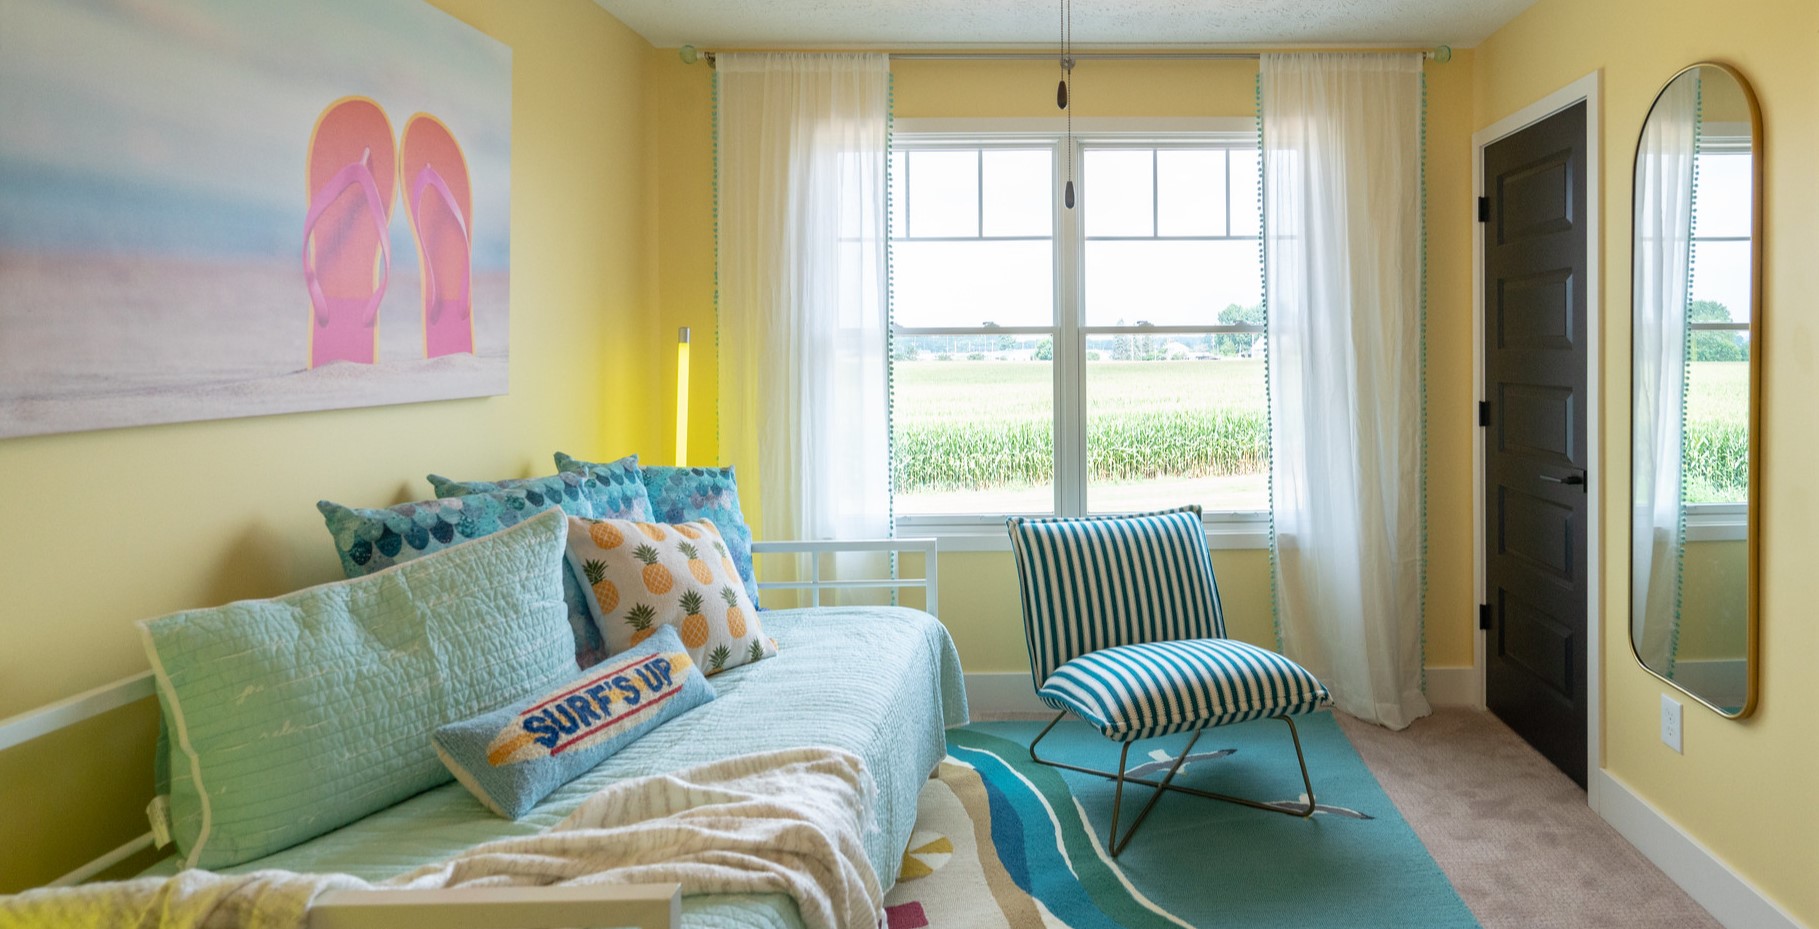 Для декора комнаты можно использовать подушки с яркими принтами и картины